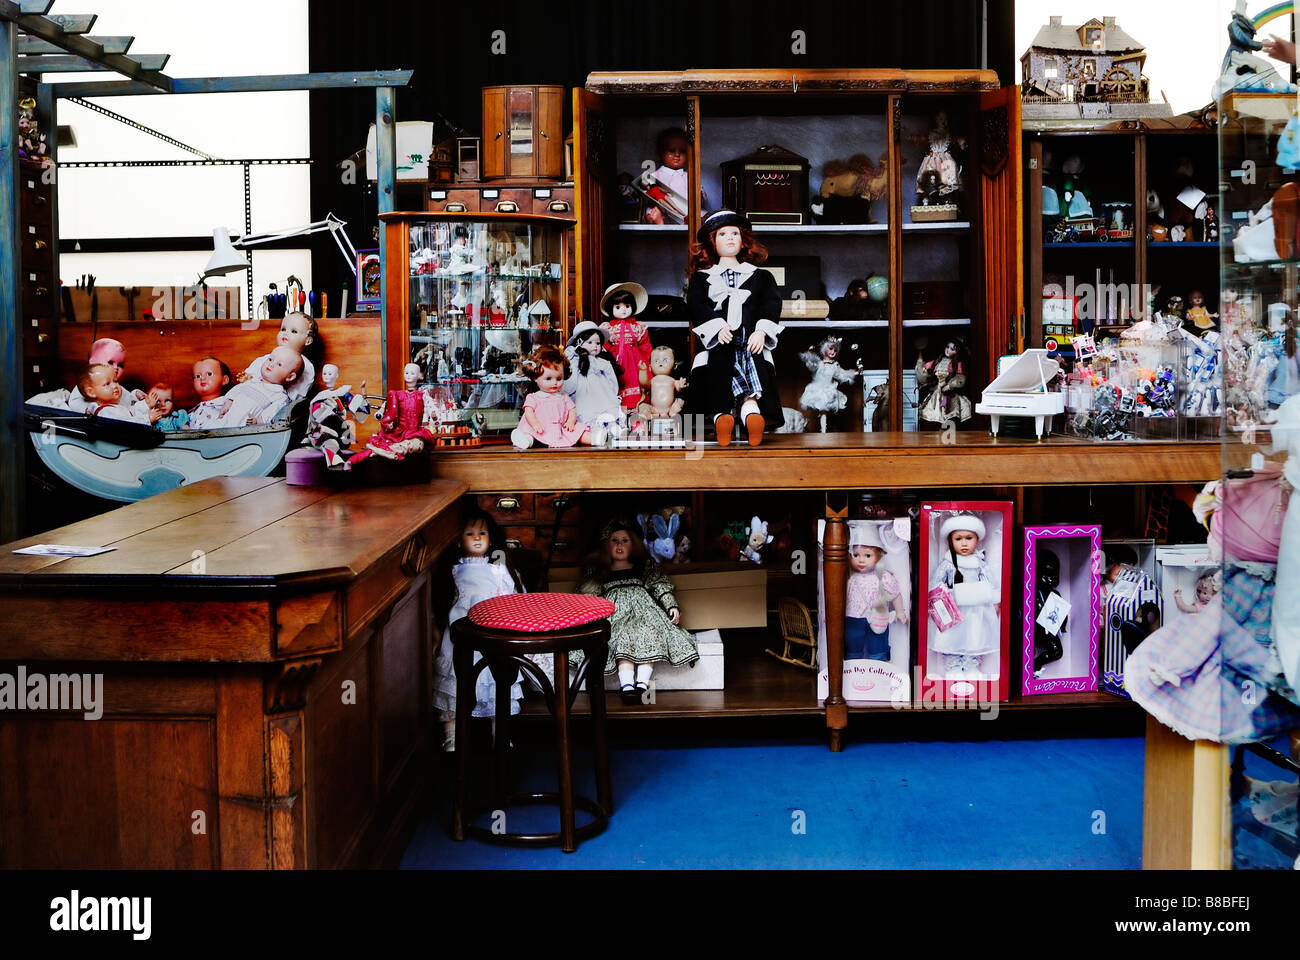 Parigi Francia, Shopping, negozio di giocattoli d'antiquariato per bambini, bambole, collezione bambole, vista generale all'interno del negozio di giocattoli d'epoca, Foto Stock